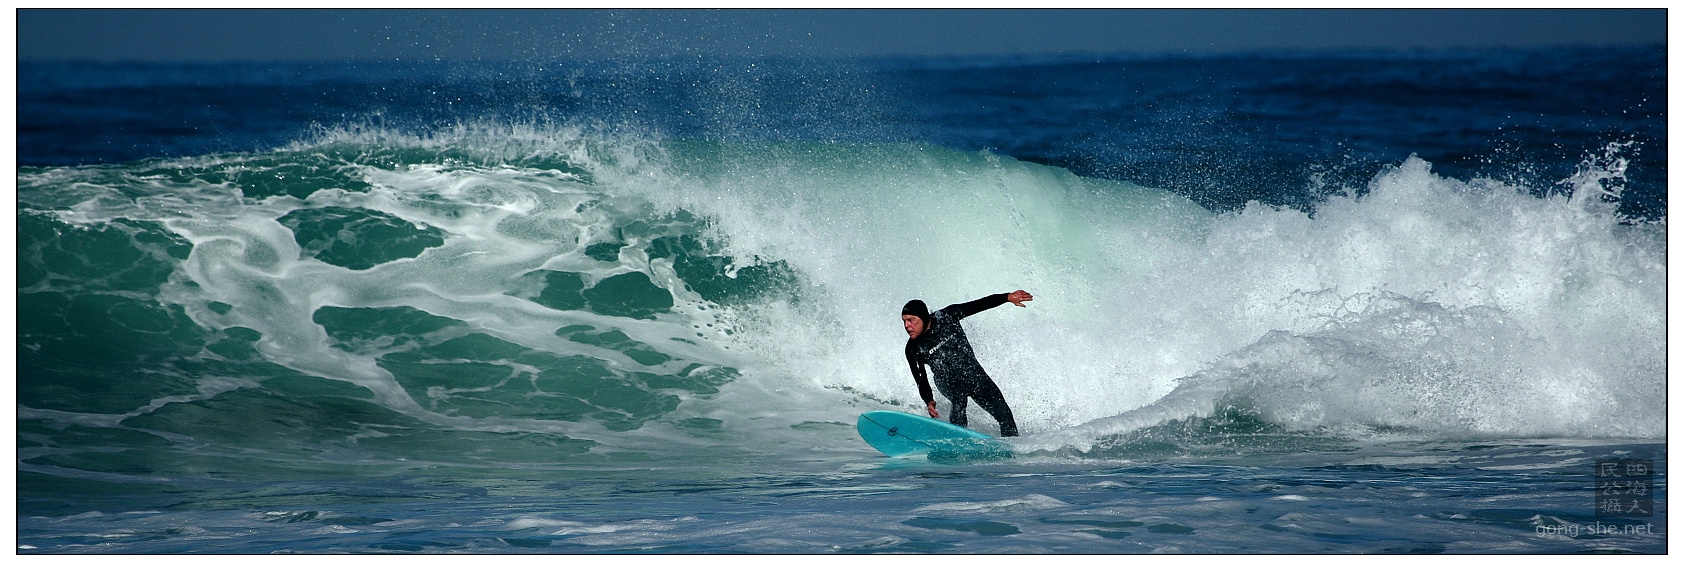 surfing-11.JPG